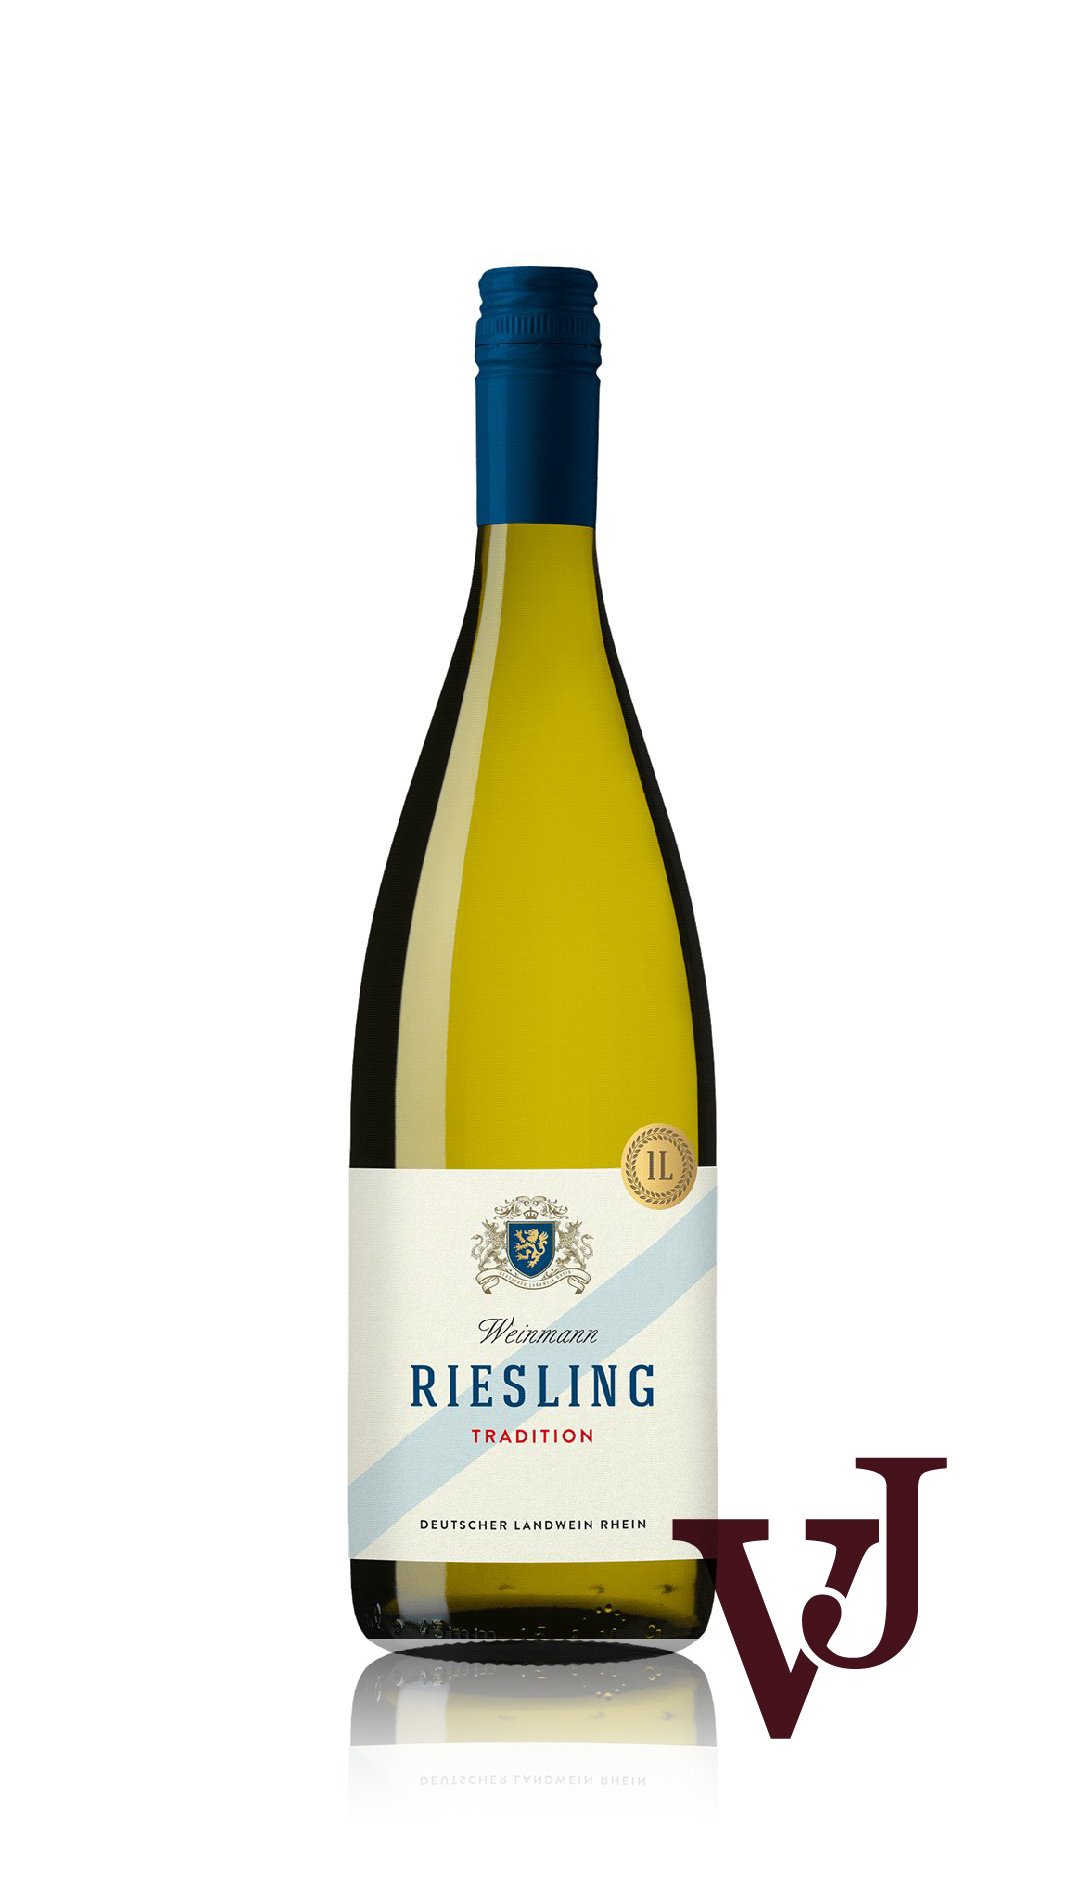 Vitt Vin - Weinmann Riesling 2023 artikel nummer 7001601 från producenten ViniMundi från området Tyskland.